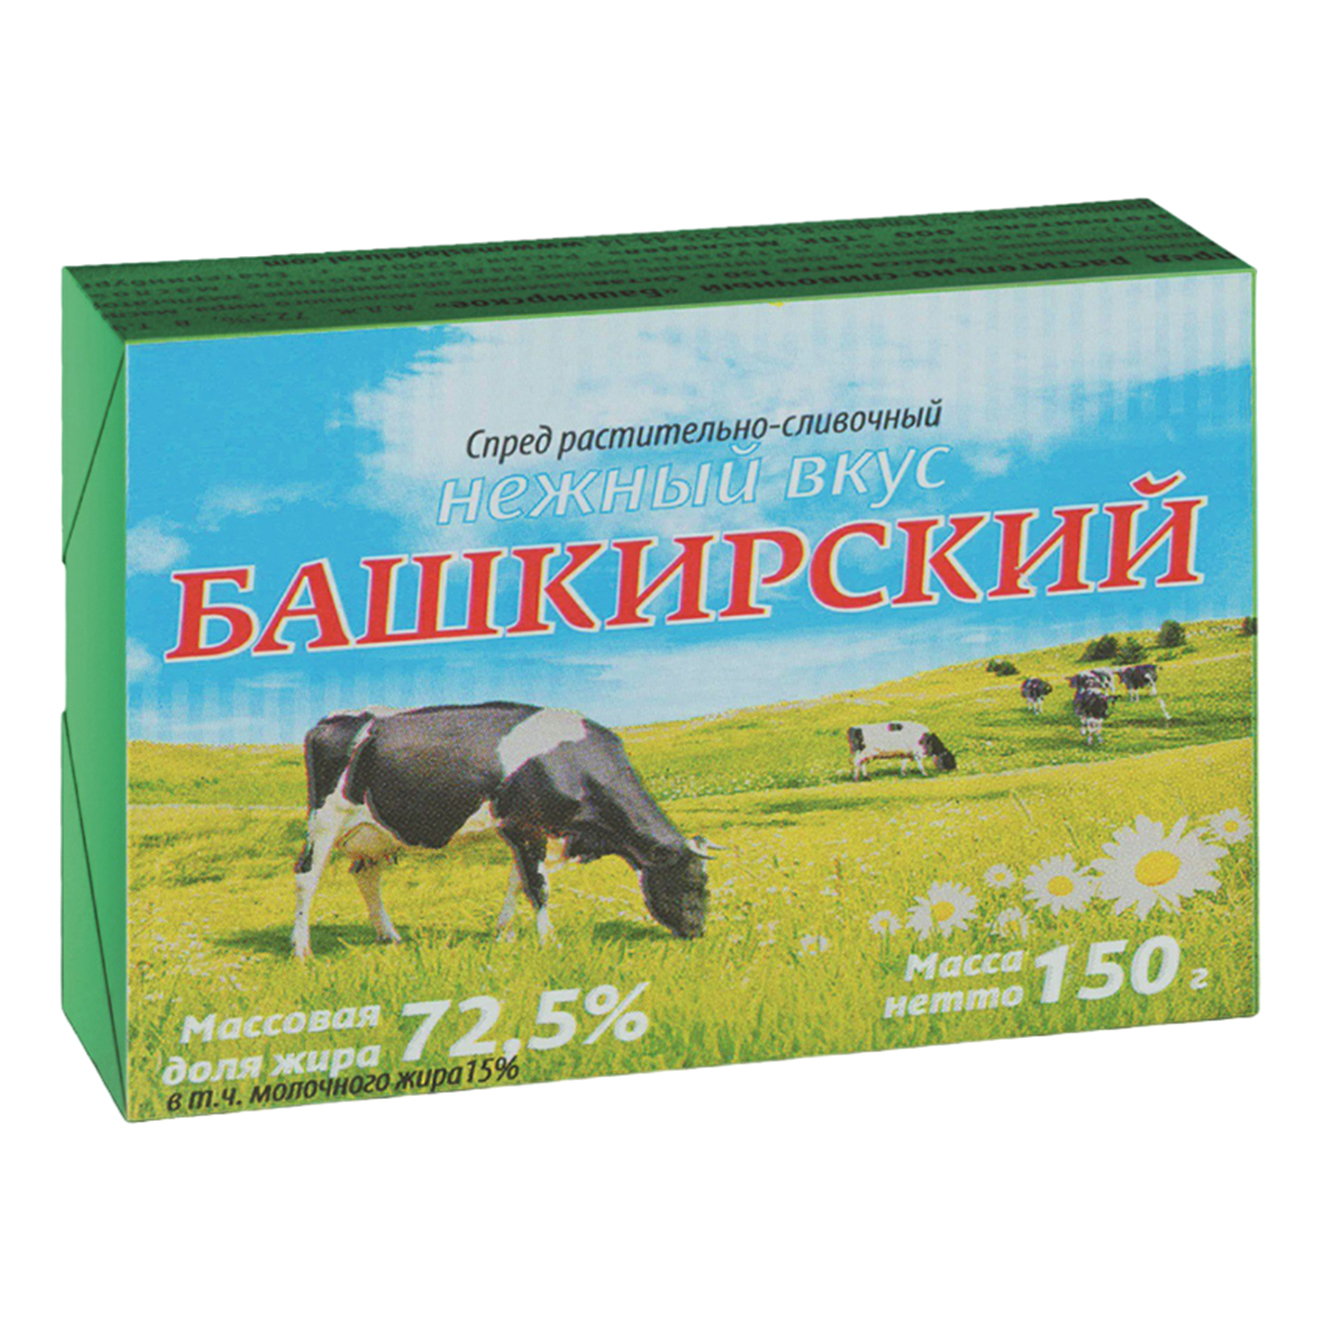 Спред растительно-сливочный Маслодел Башкирский 72,5% СЗМЖ 150 г